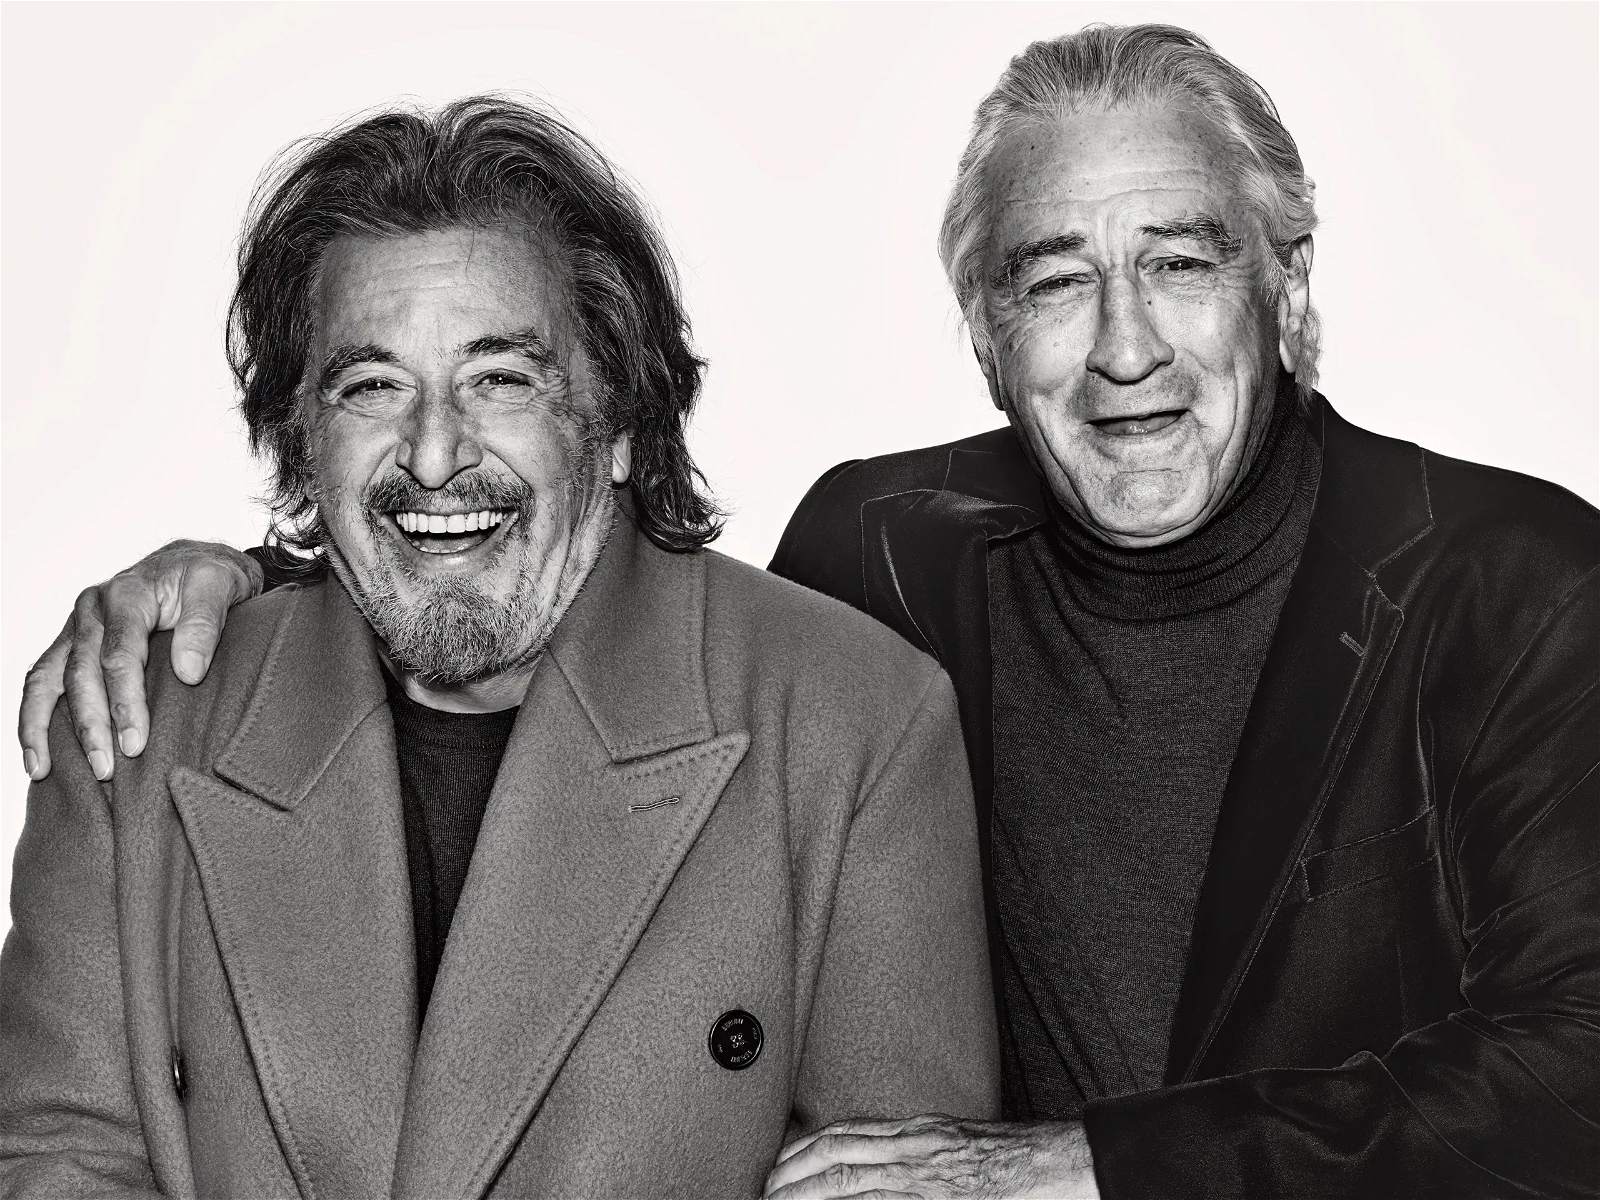 Robert De Niro with Al Pacino